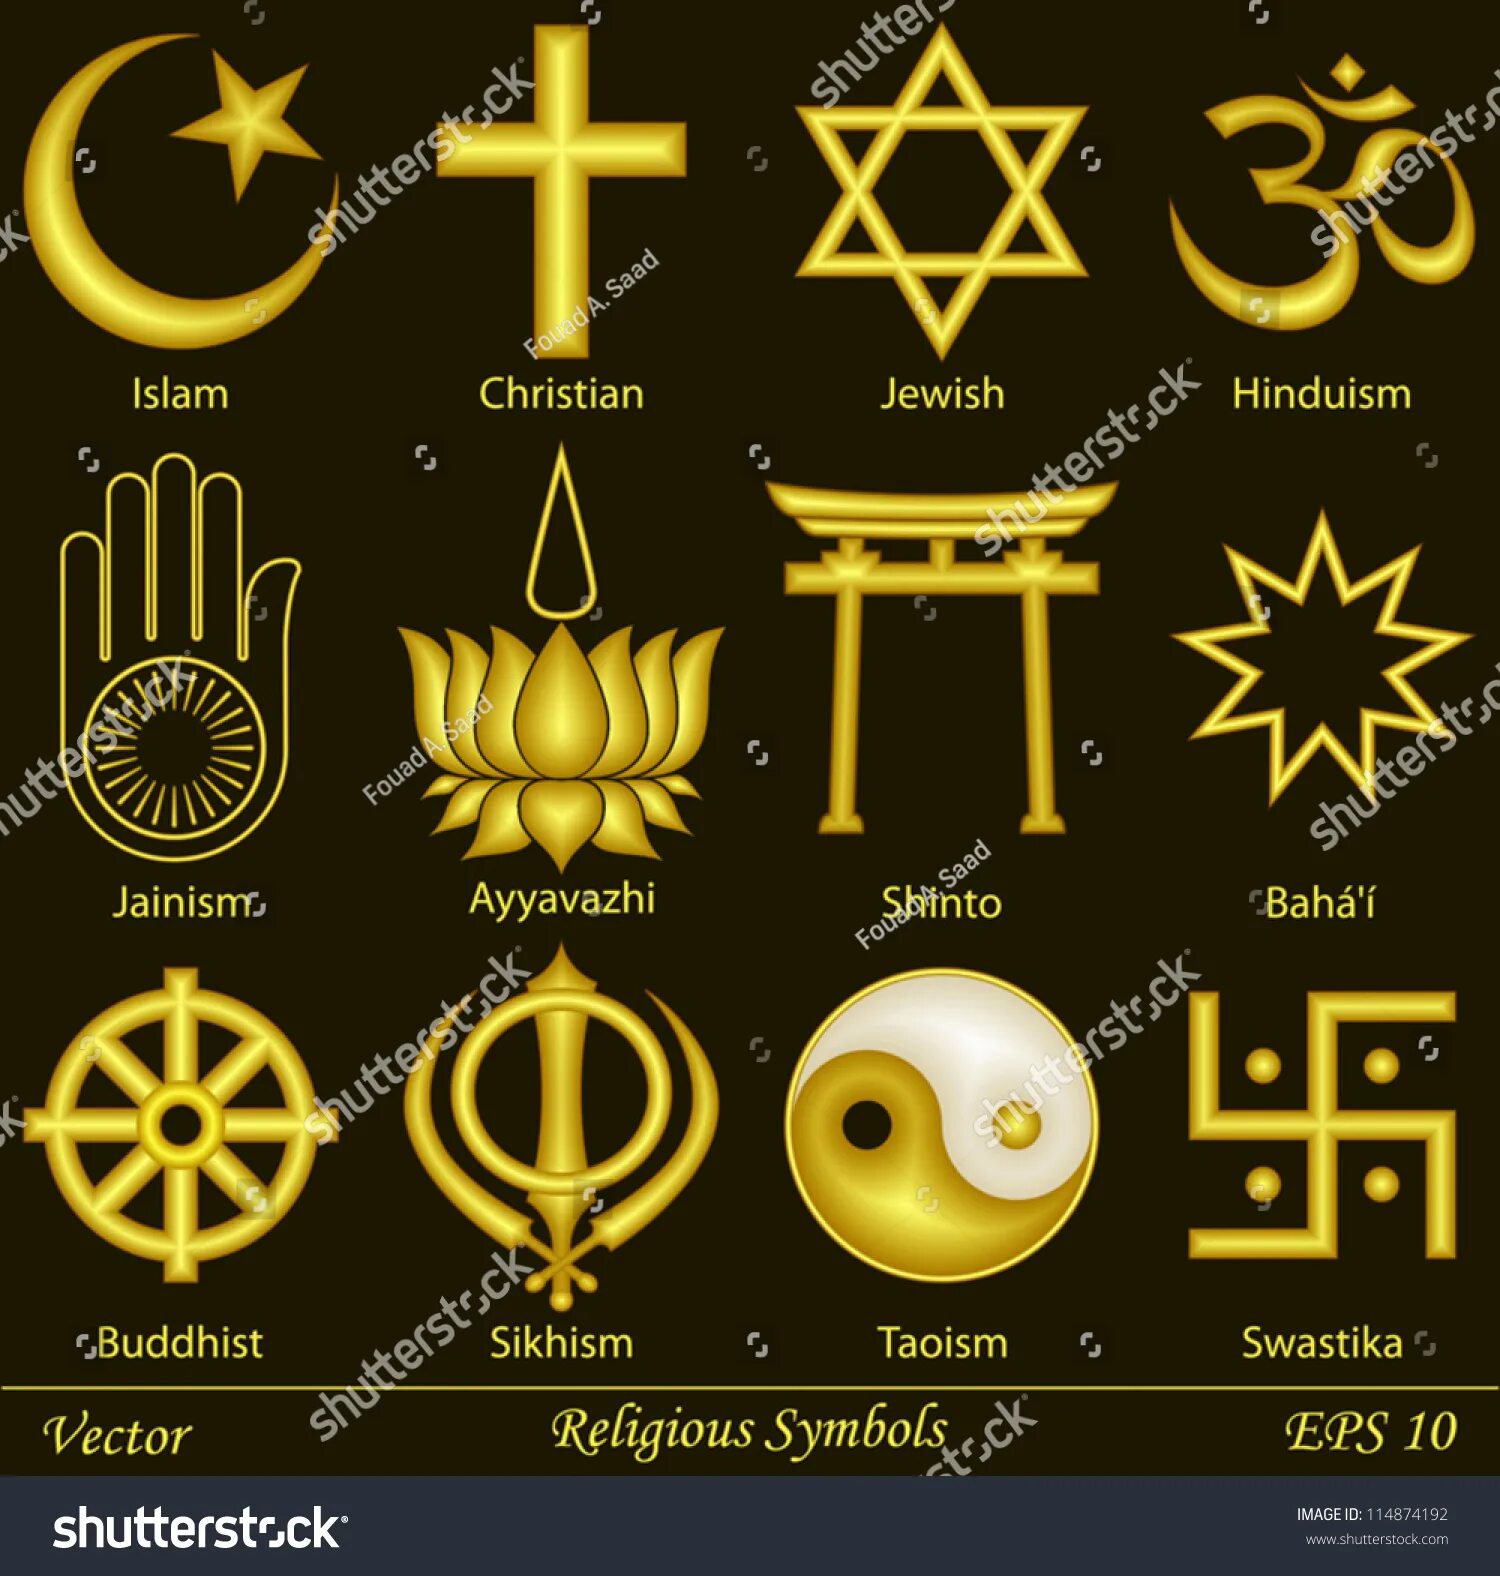 Знаки религий. Религиозные символы. Религии символы с названиями. Символика разных религий.